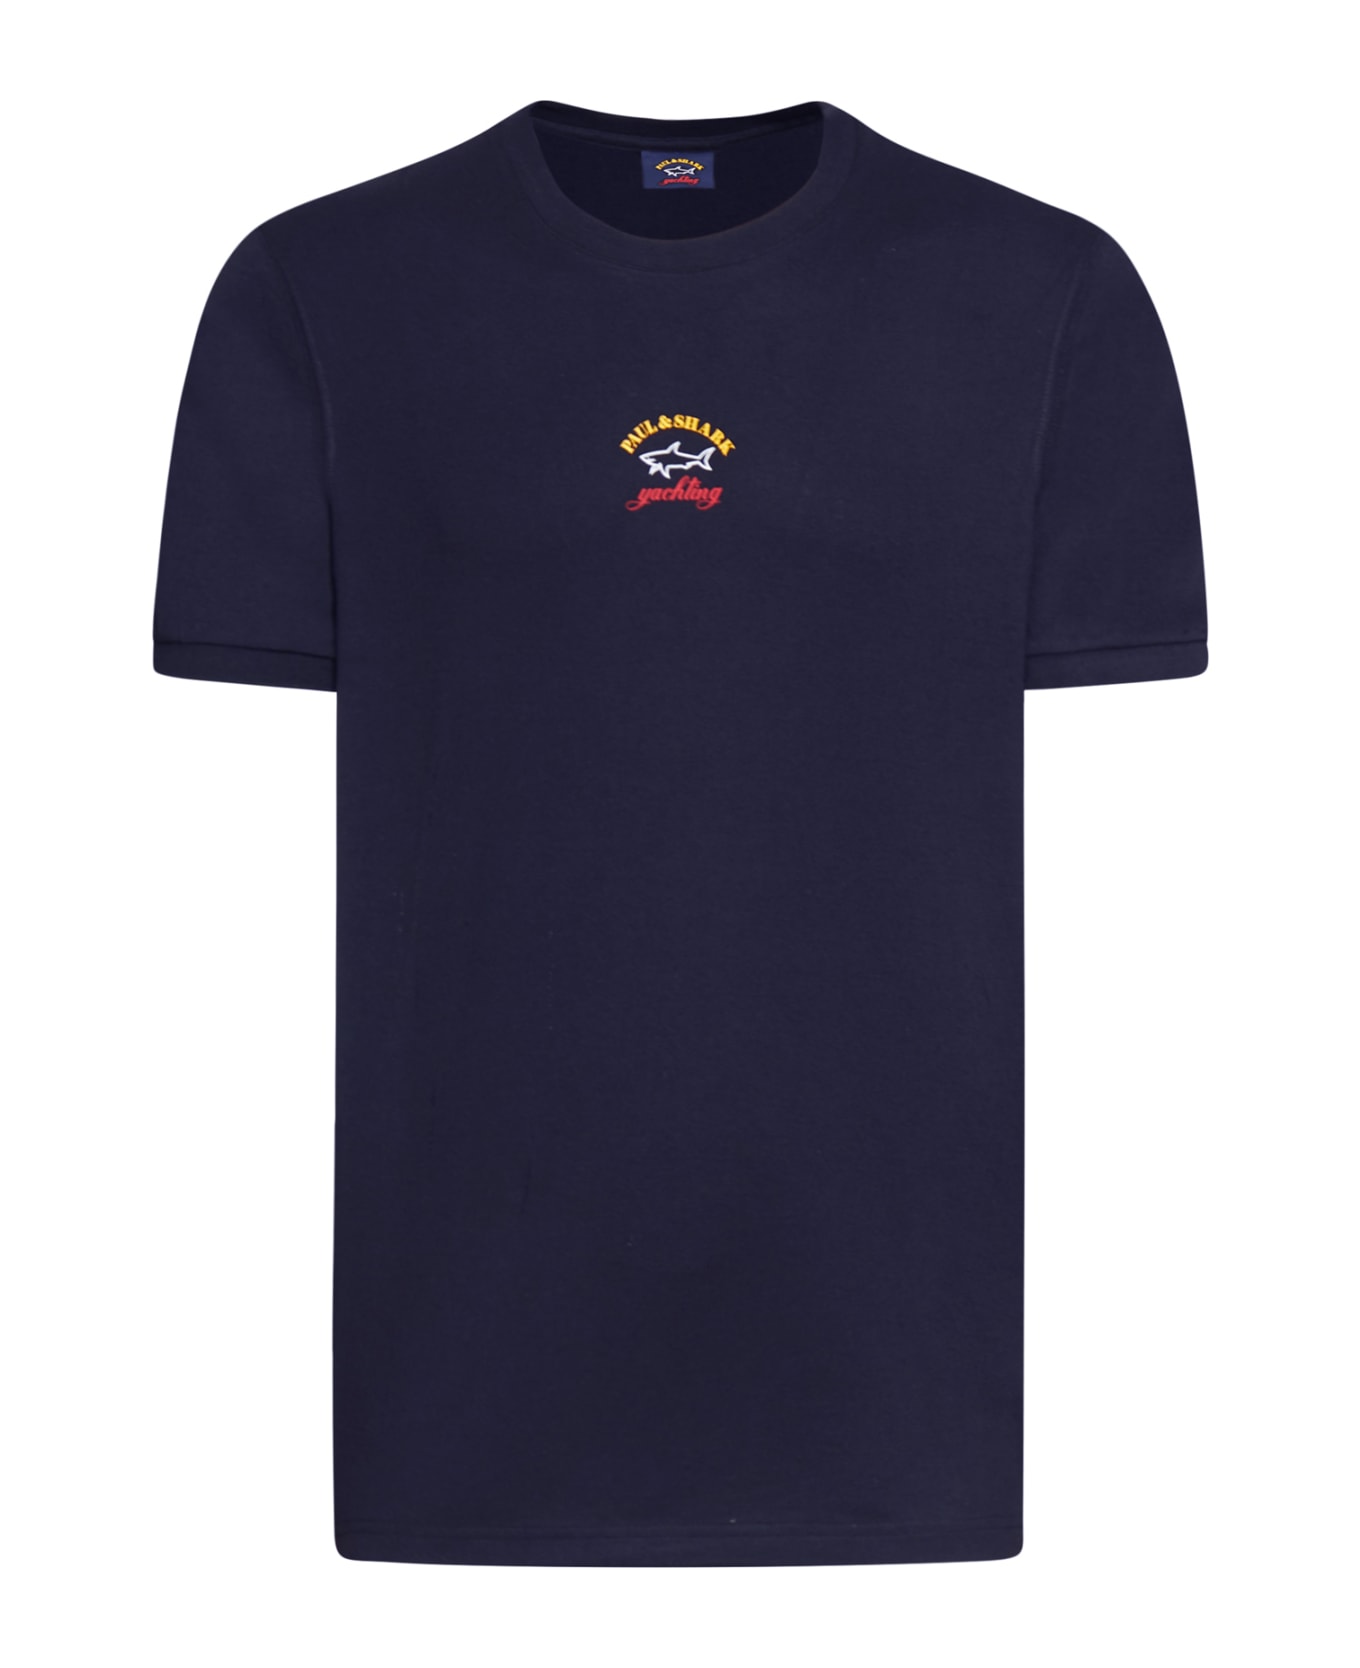 Paul&Shark T-shirt Cotton - Blue